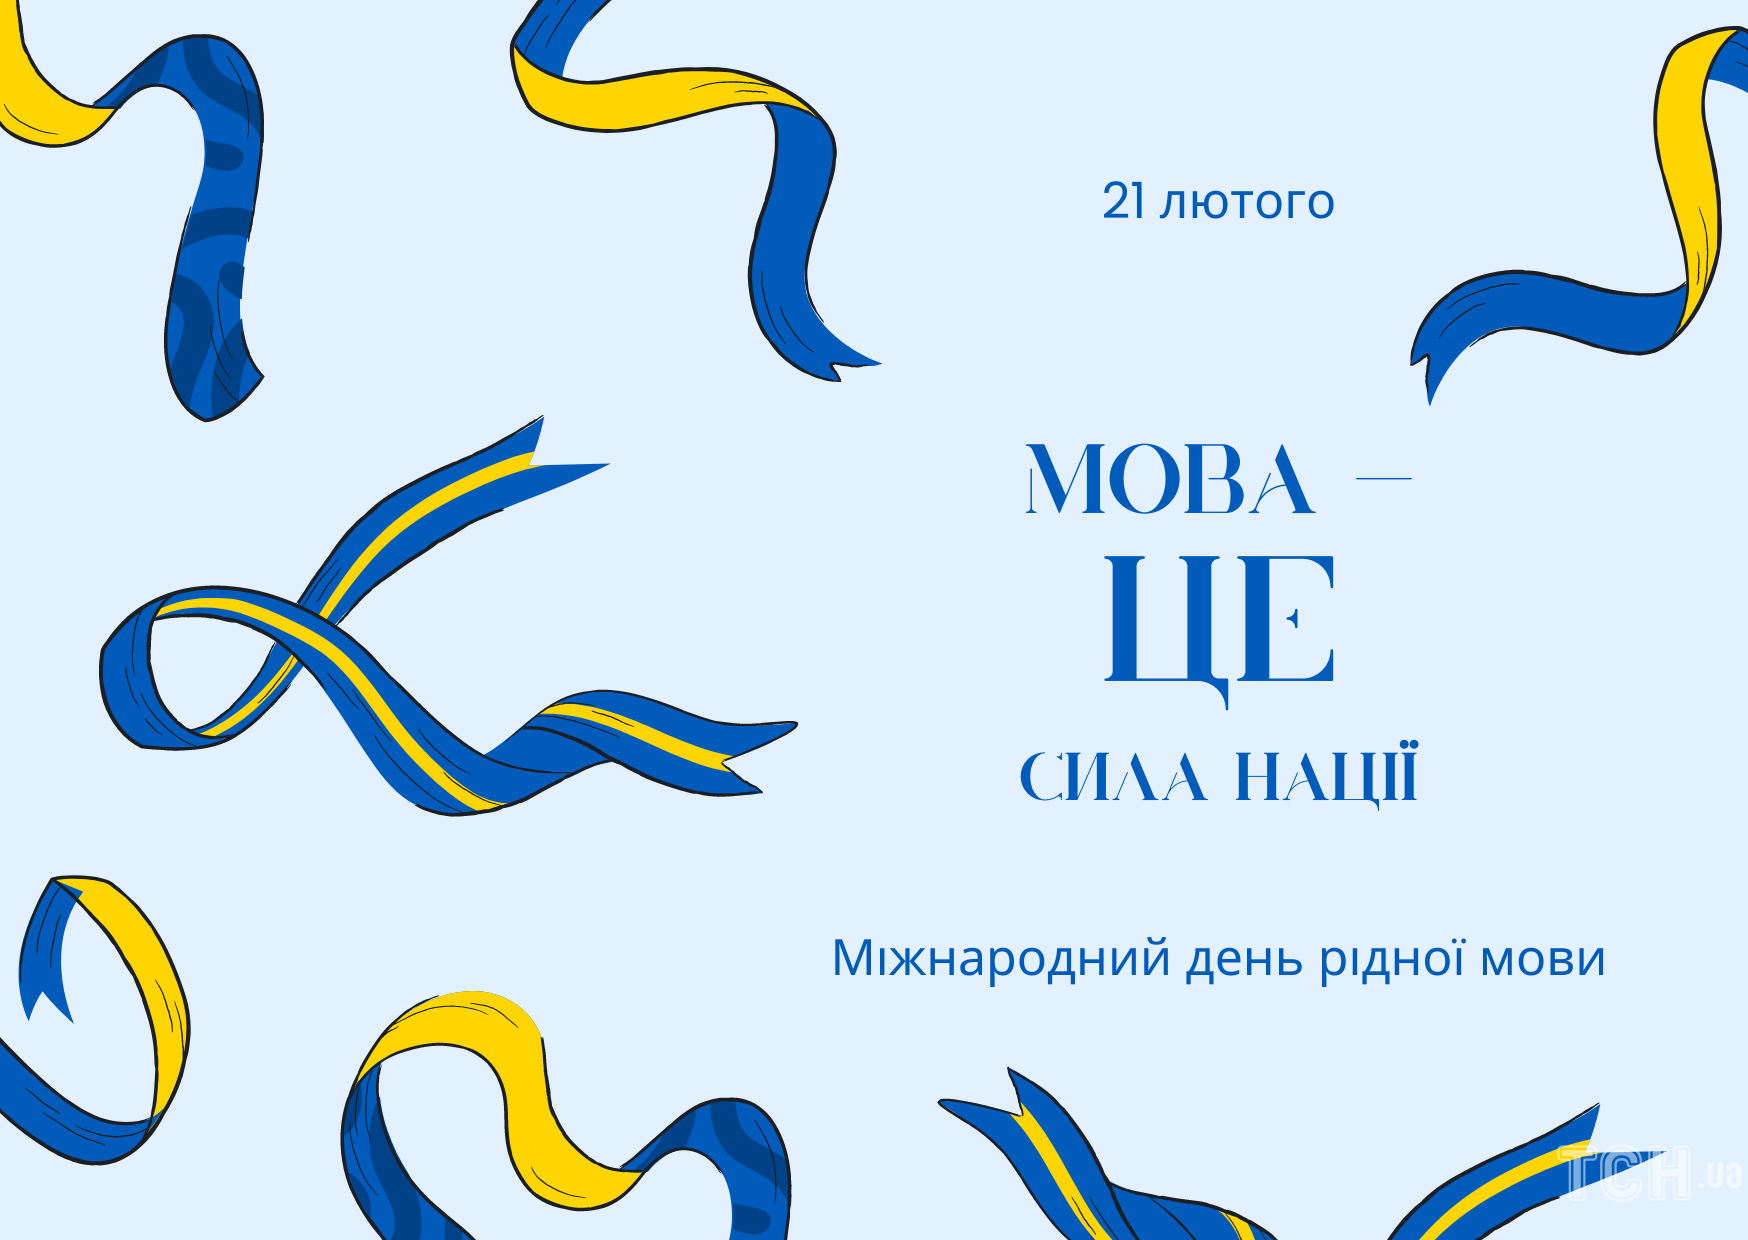 День рідної мови: історія, цікаві факти і щирі привітання для українців